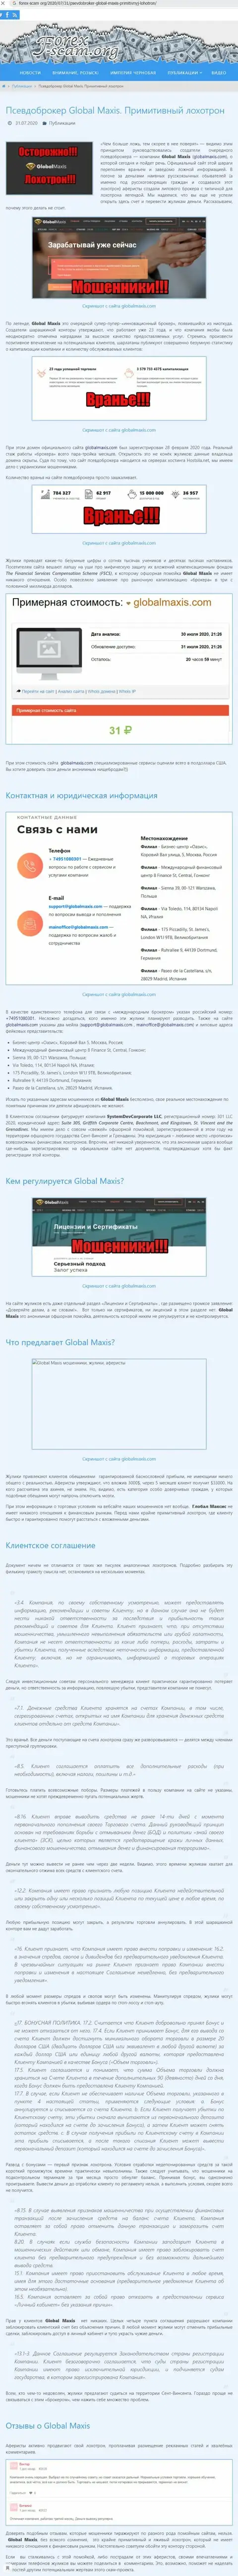 ЖУЛЬНИЧЕСТВО, РАЗВОДНЯК и ВРАНЬЕ - обзор конторы Global Maxis